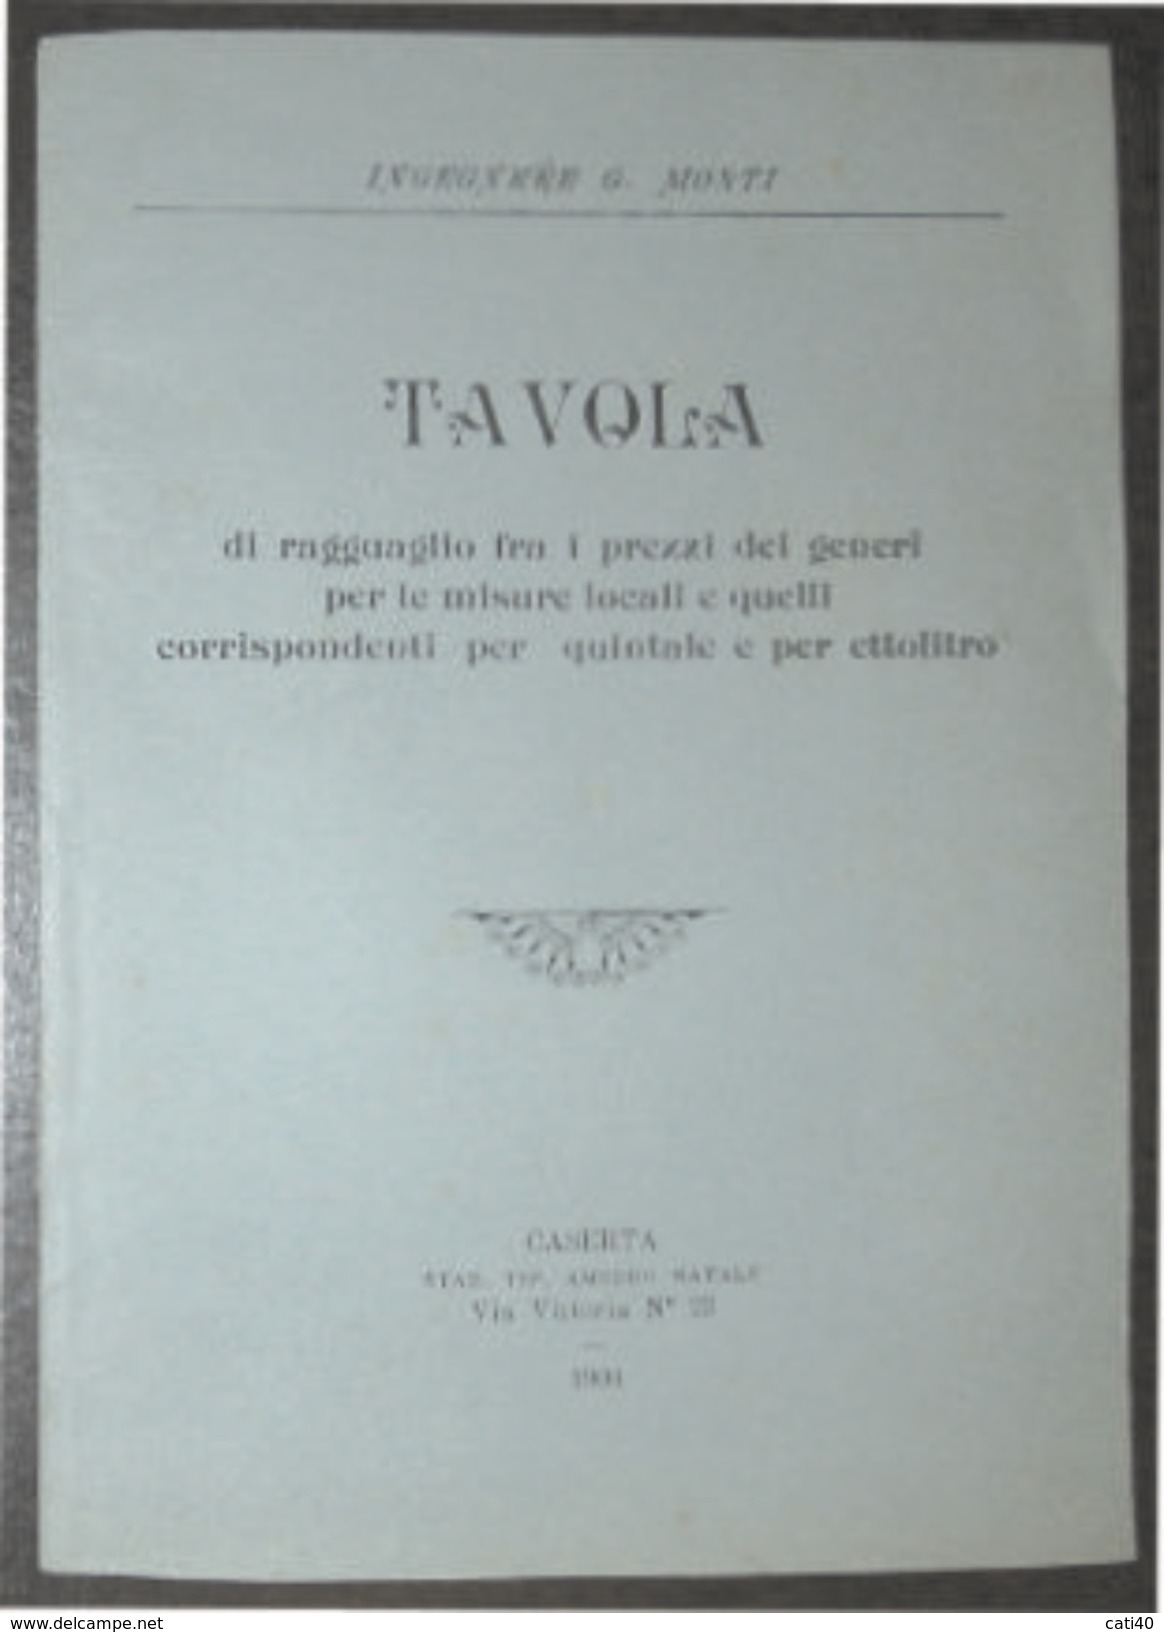 COMMERCIO  TAVOLA  UNIFICAZIONE  PREZZI   PER QUINTALE ED ETTOLITRO - CASERTA 1904 TIP.AMEDEO NATALE - Textes Scientifiques